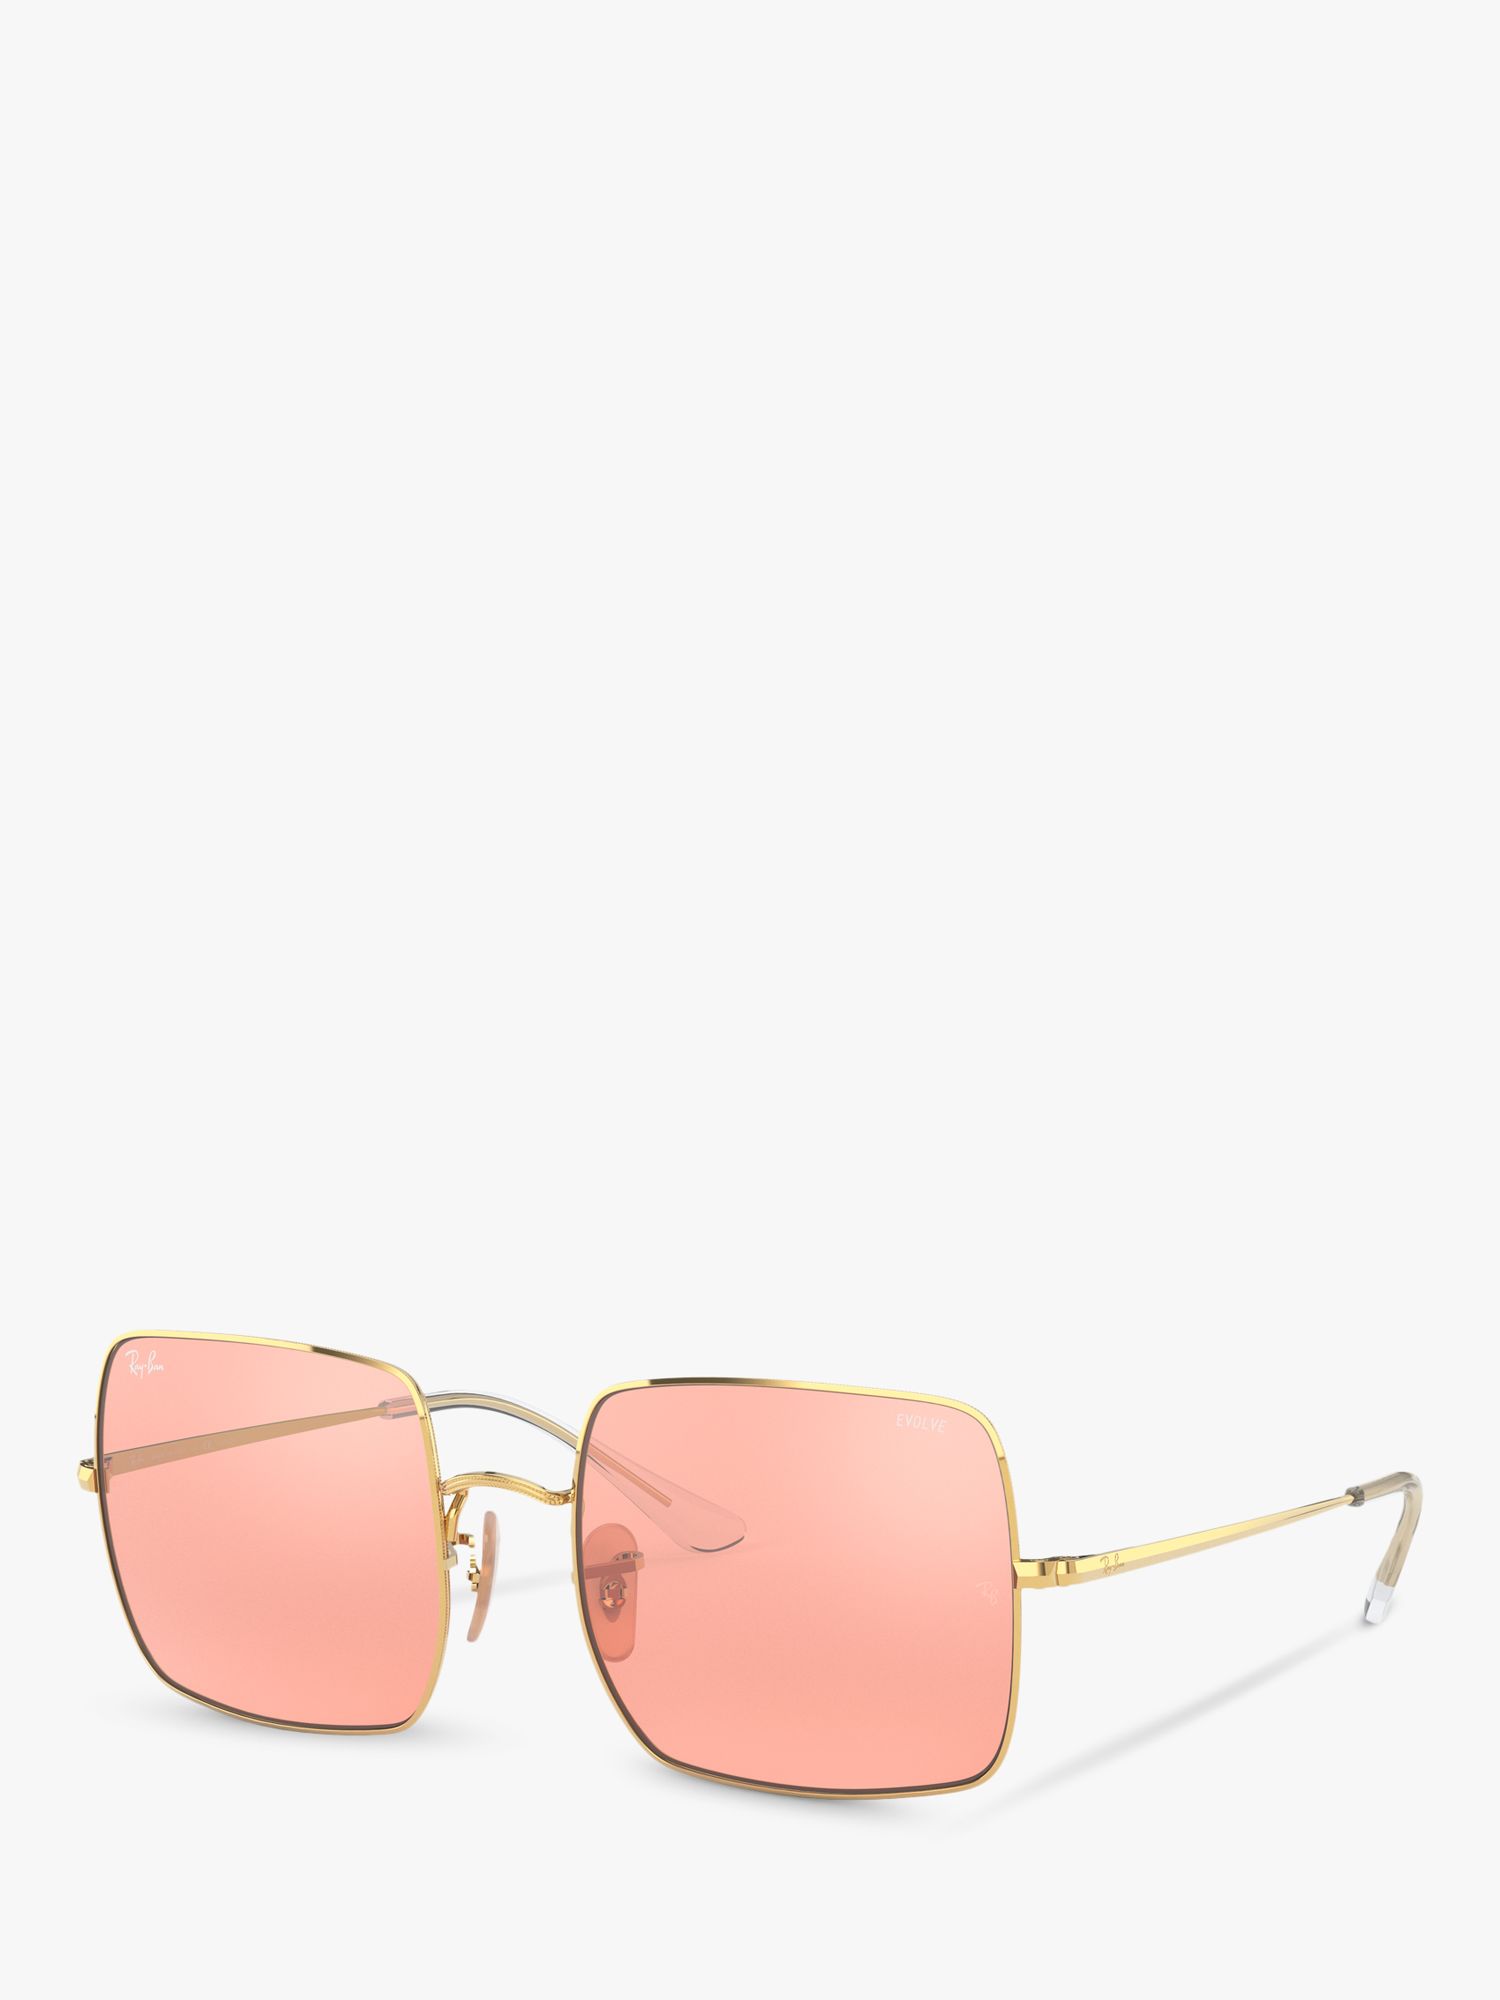 Квадратные солнцезащитные очки унисекс Ray-Ban RB1971, золотисто-розовые цена и фото